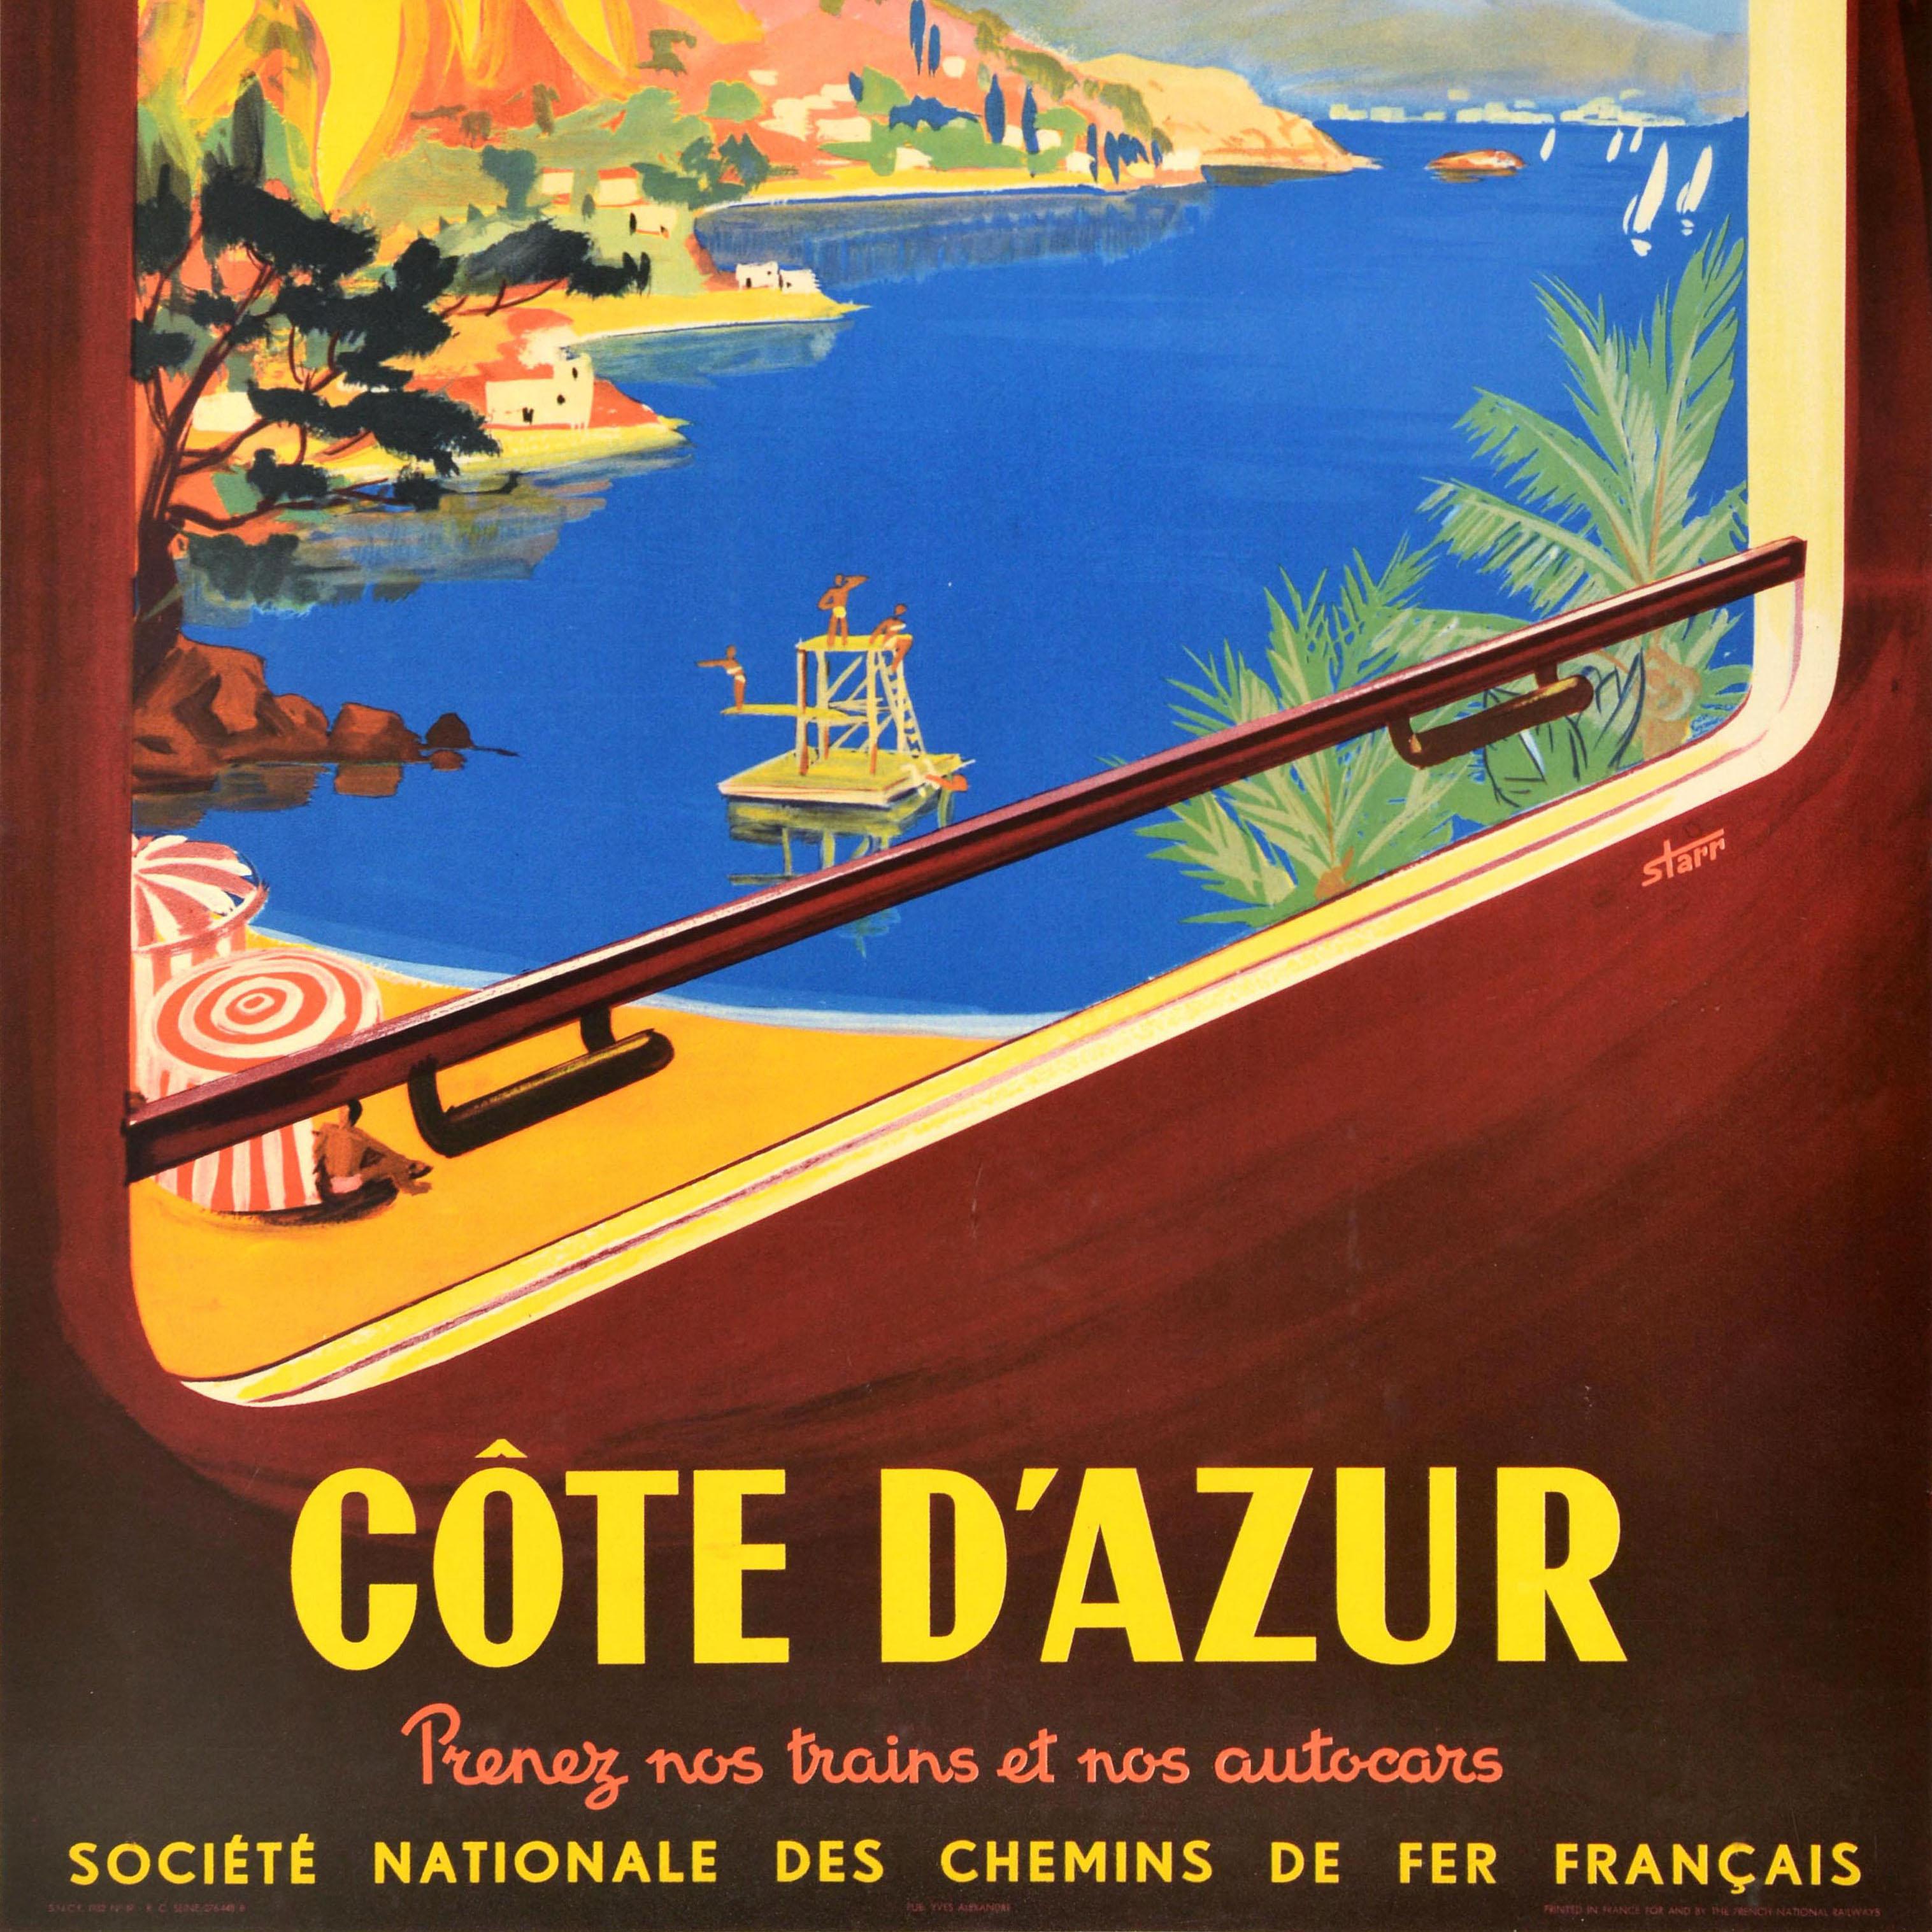 Original SNCF Reiseplakat - Visitez la France Cote d'Azur Prenez nos trains et nos autocars Societe Nationale des Chemins de Fer Francais / Visit France Cote d'Azur - mit farbenfrohem Kunstwerk, das einen Sandstrand mit Palmen zeigt, Menschen, die